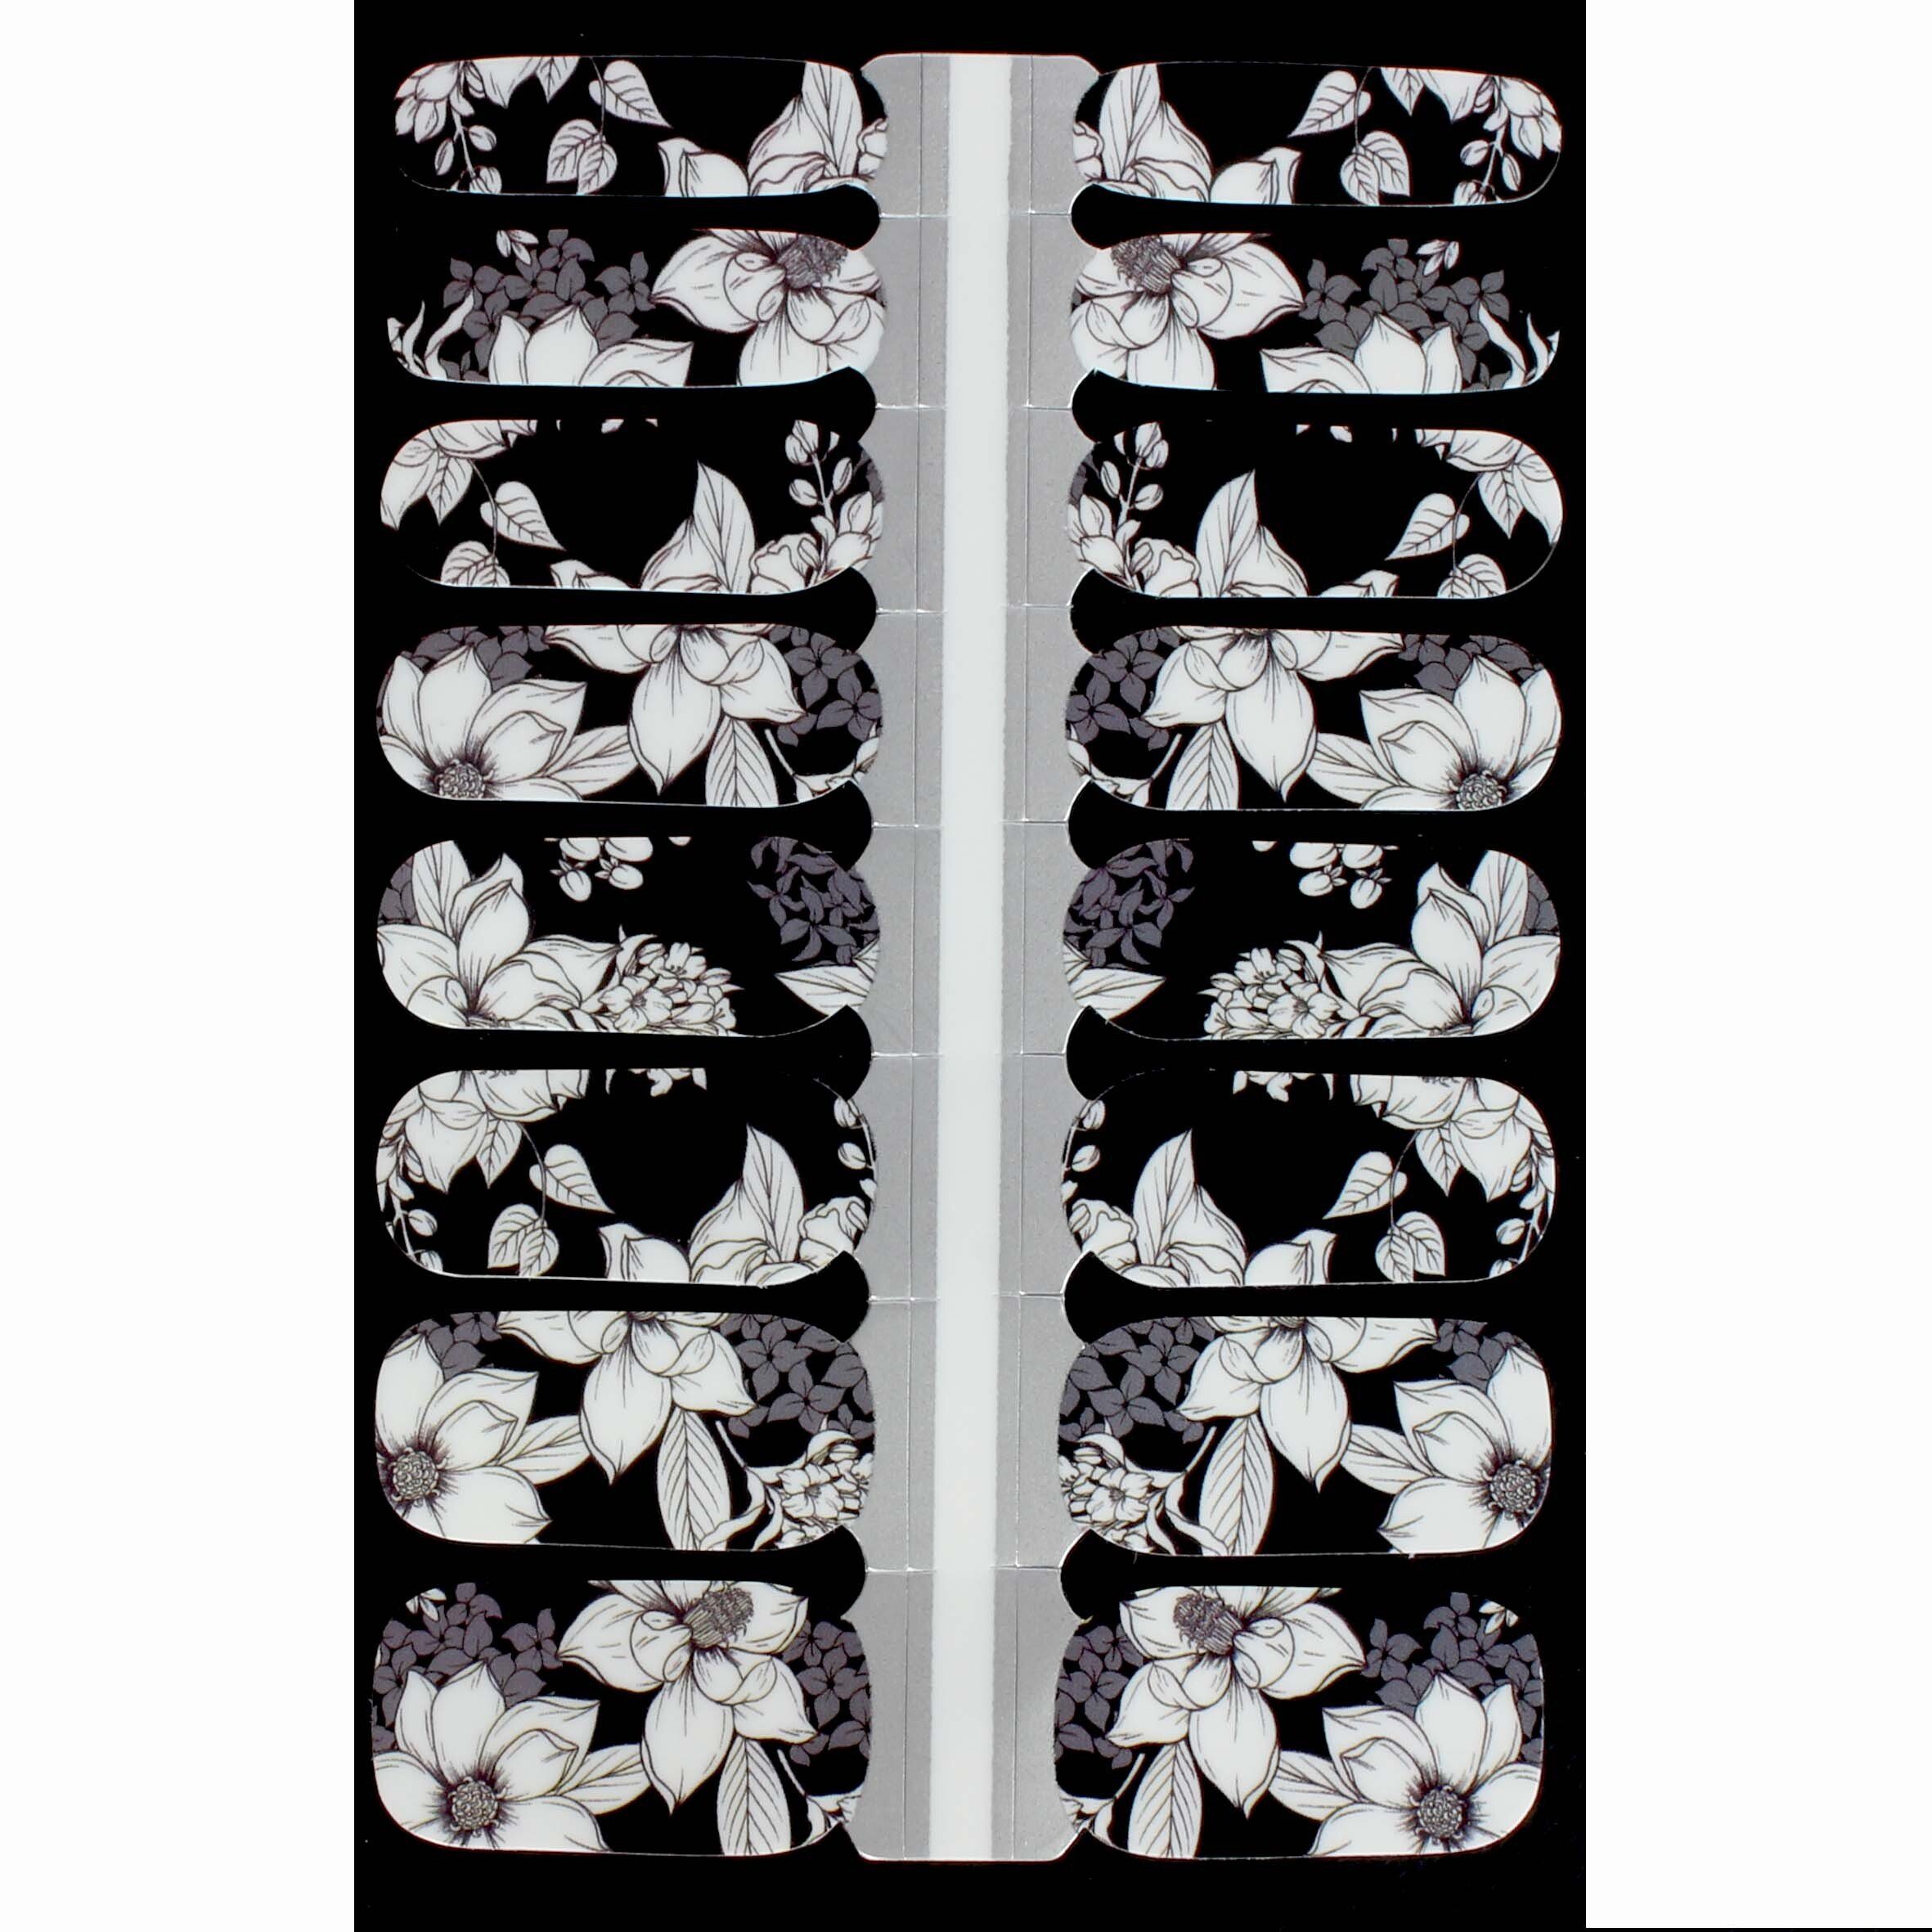 LAUED Nagellack flower mood, aus Black und & (FSC) Material White / Produktion SEDEX) (SGS zertifizierter